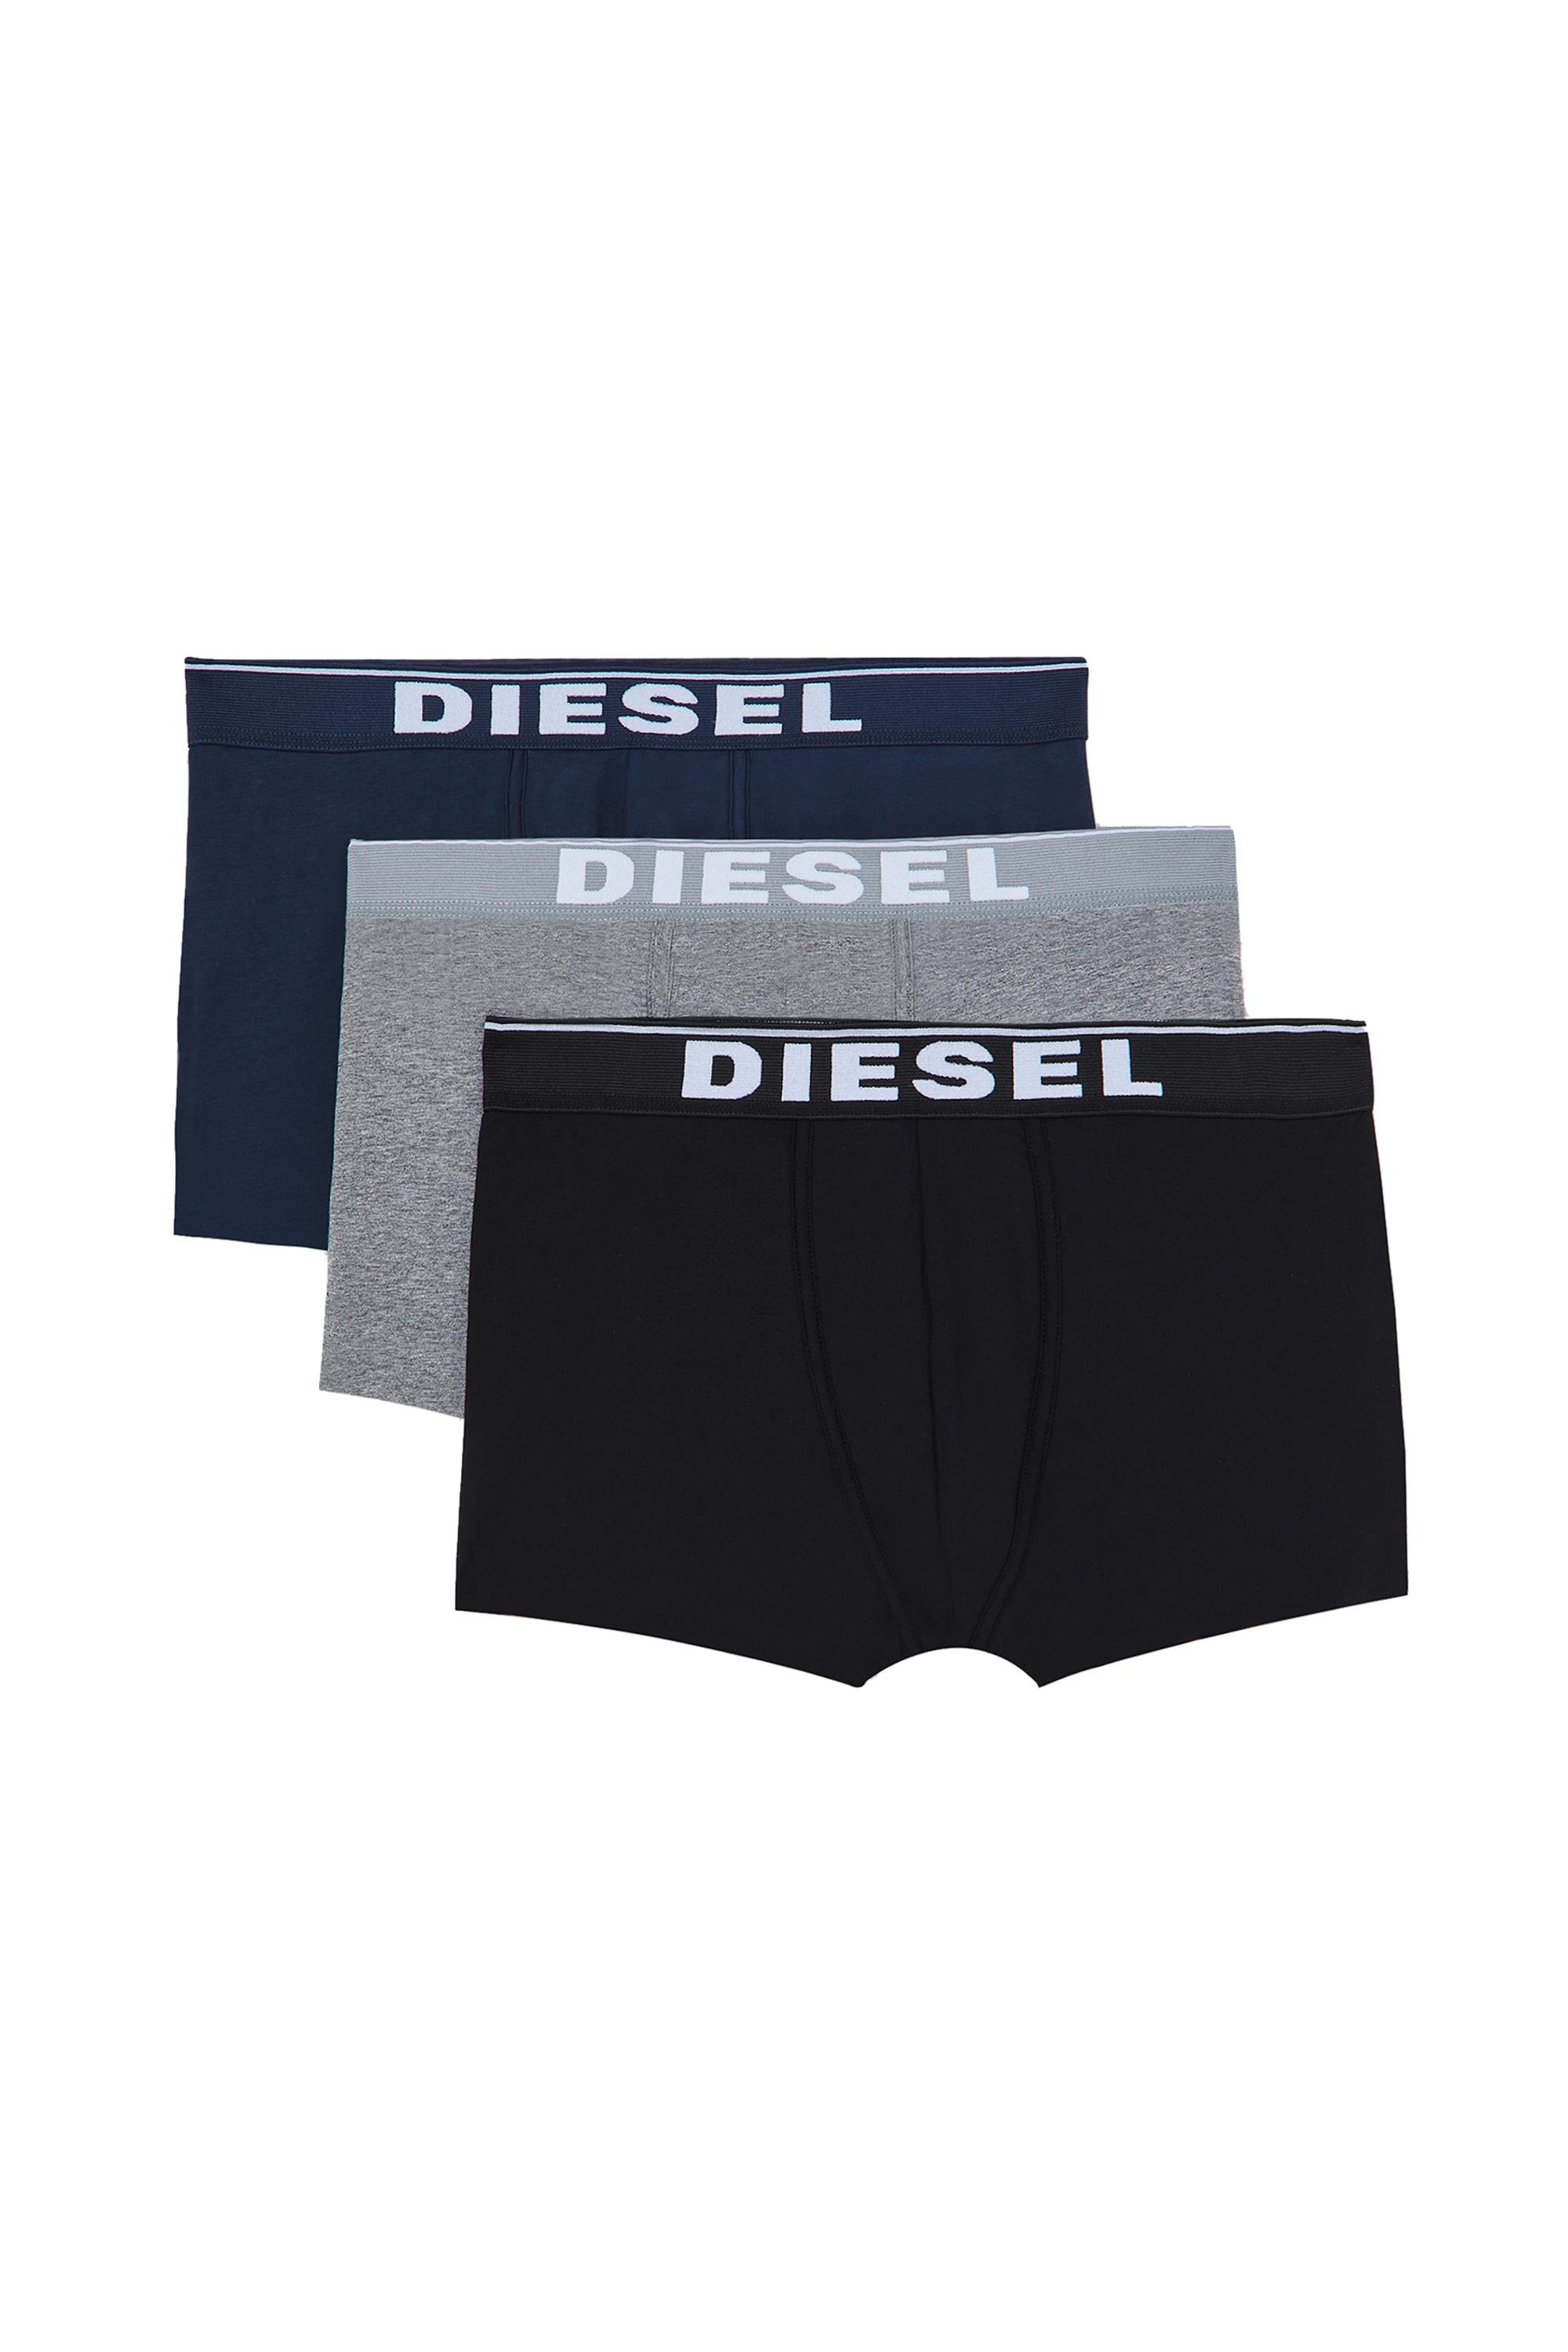 Diesel - UMBX-DAMIENTHREEPACK, Multicolor/Black - Image 2